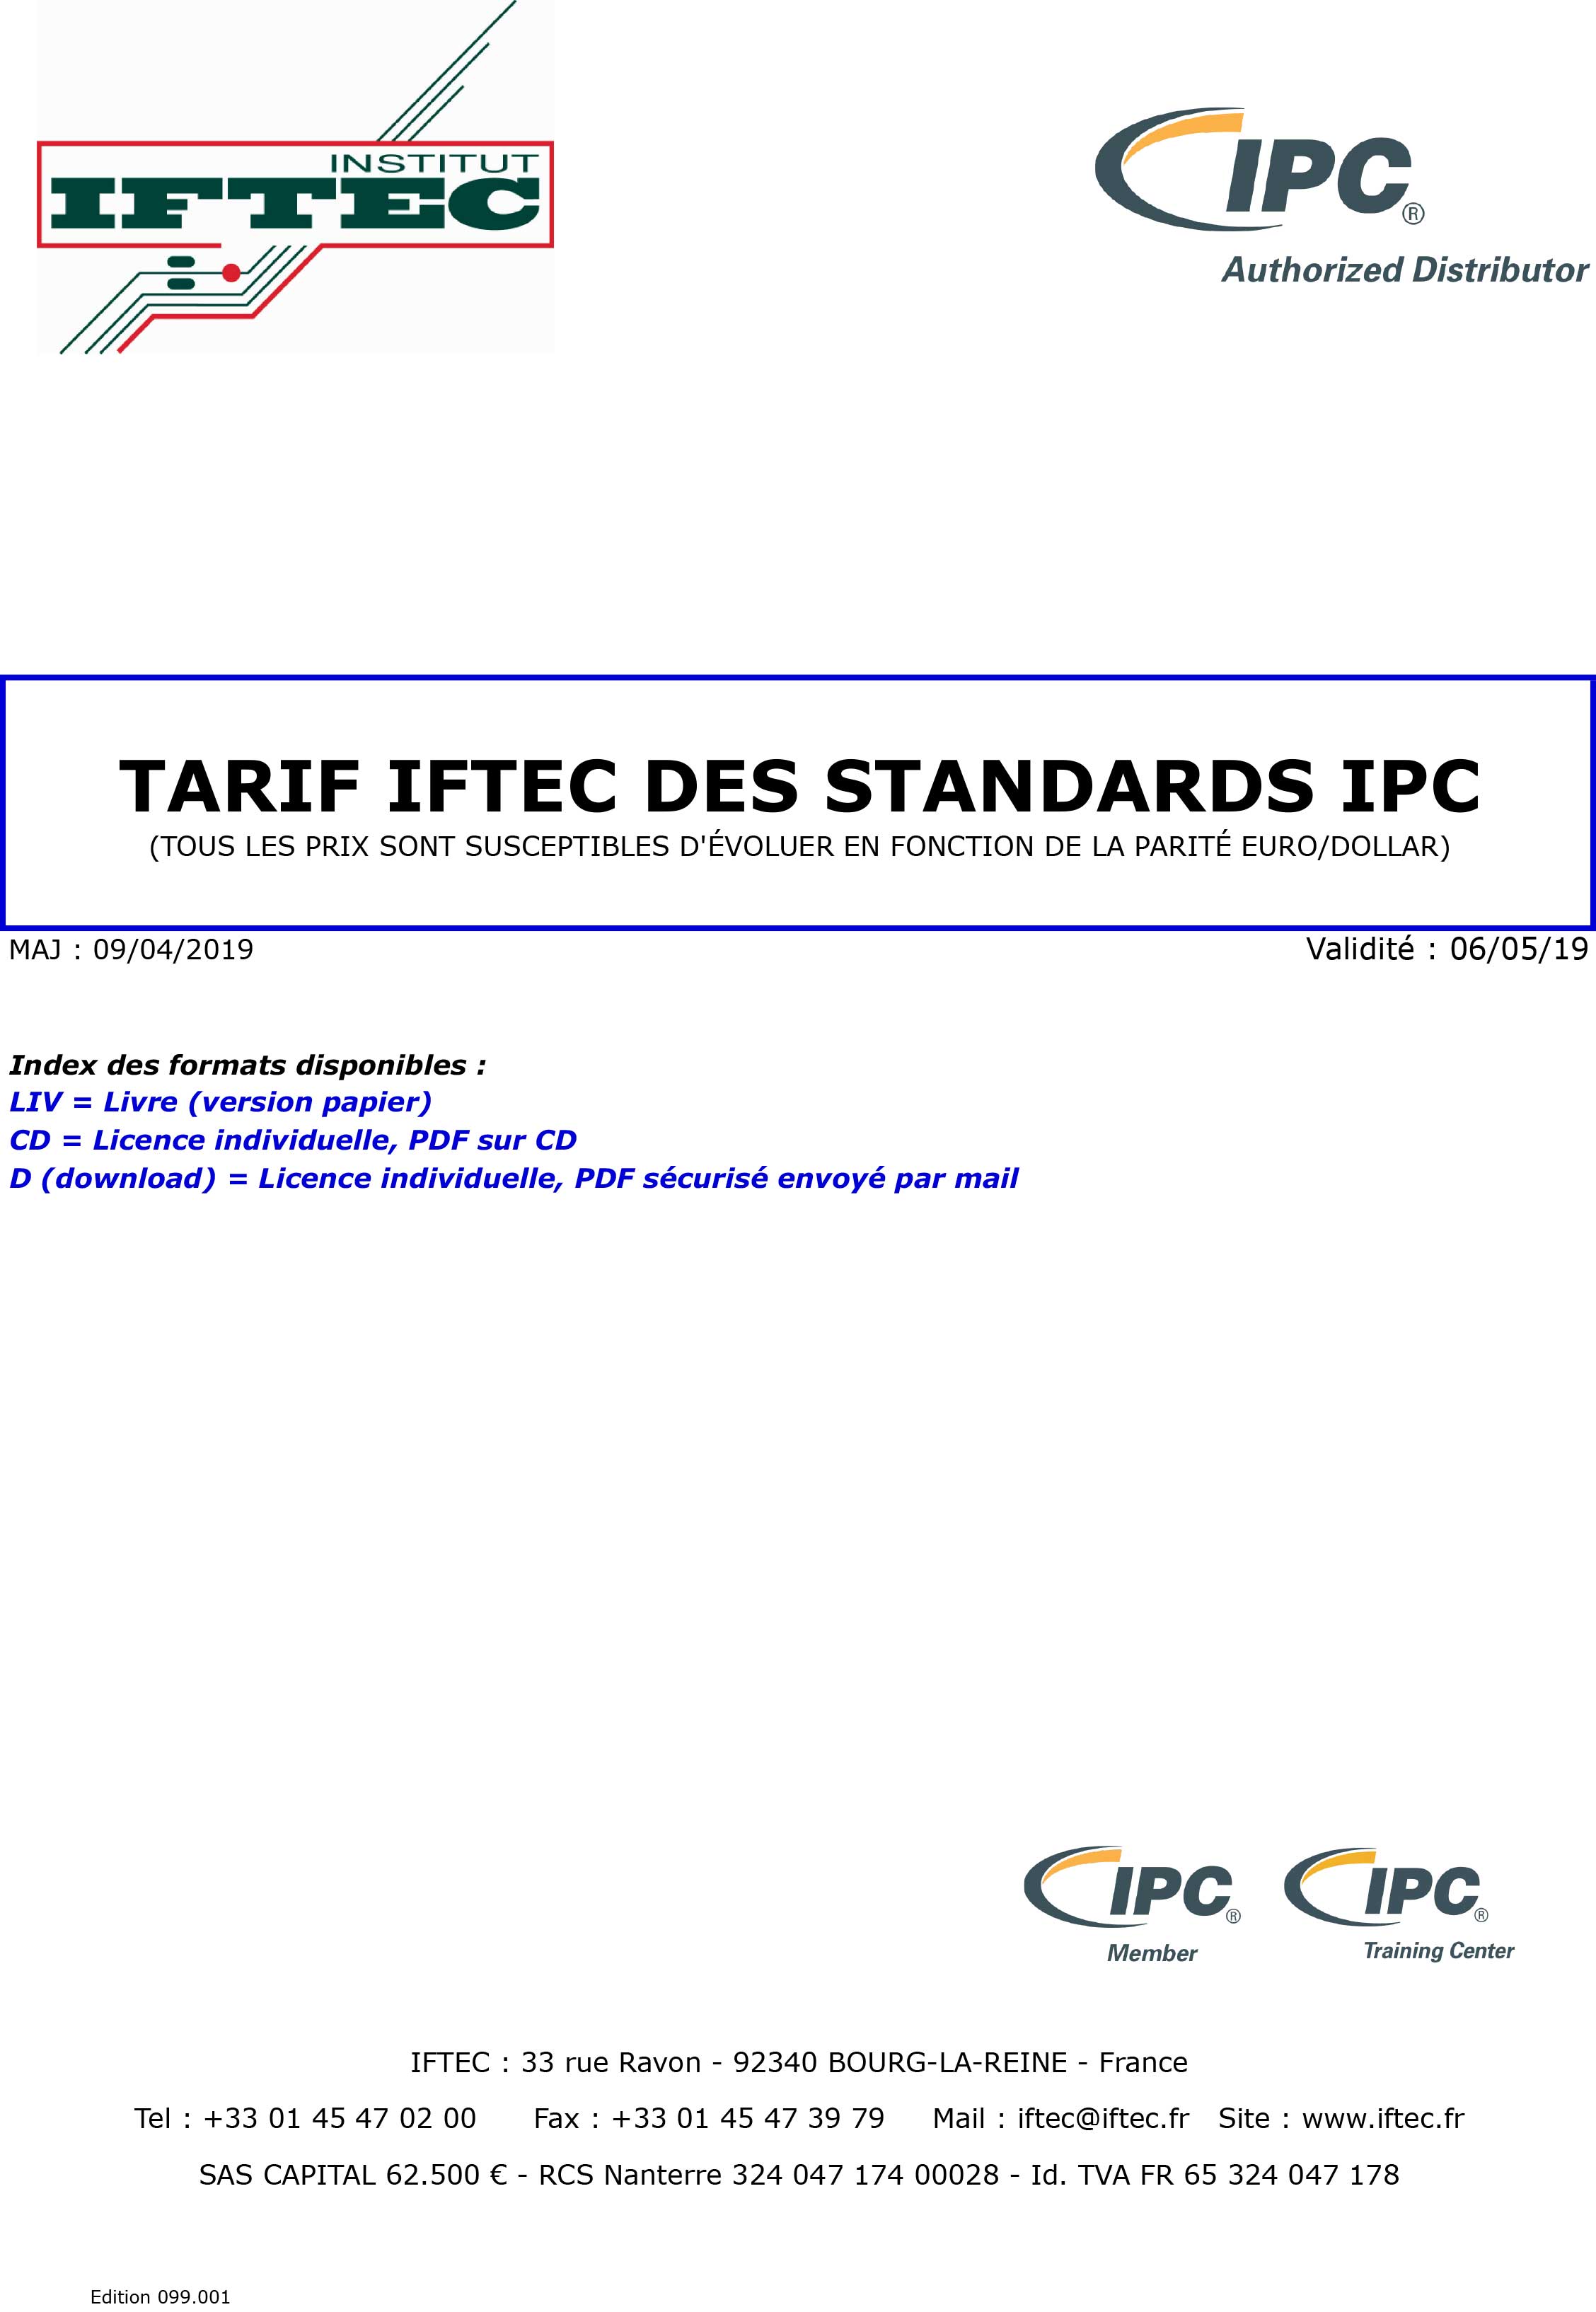 TARIF-CLIENTS-IPC-9-avr-au-6-mai-2019-1